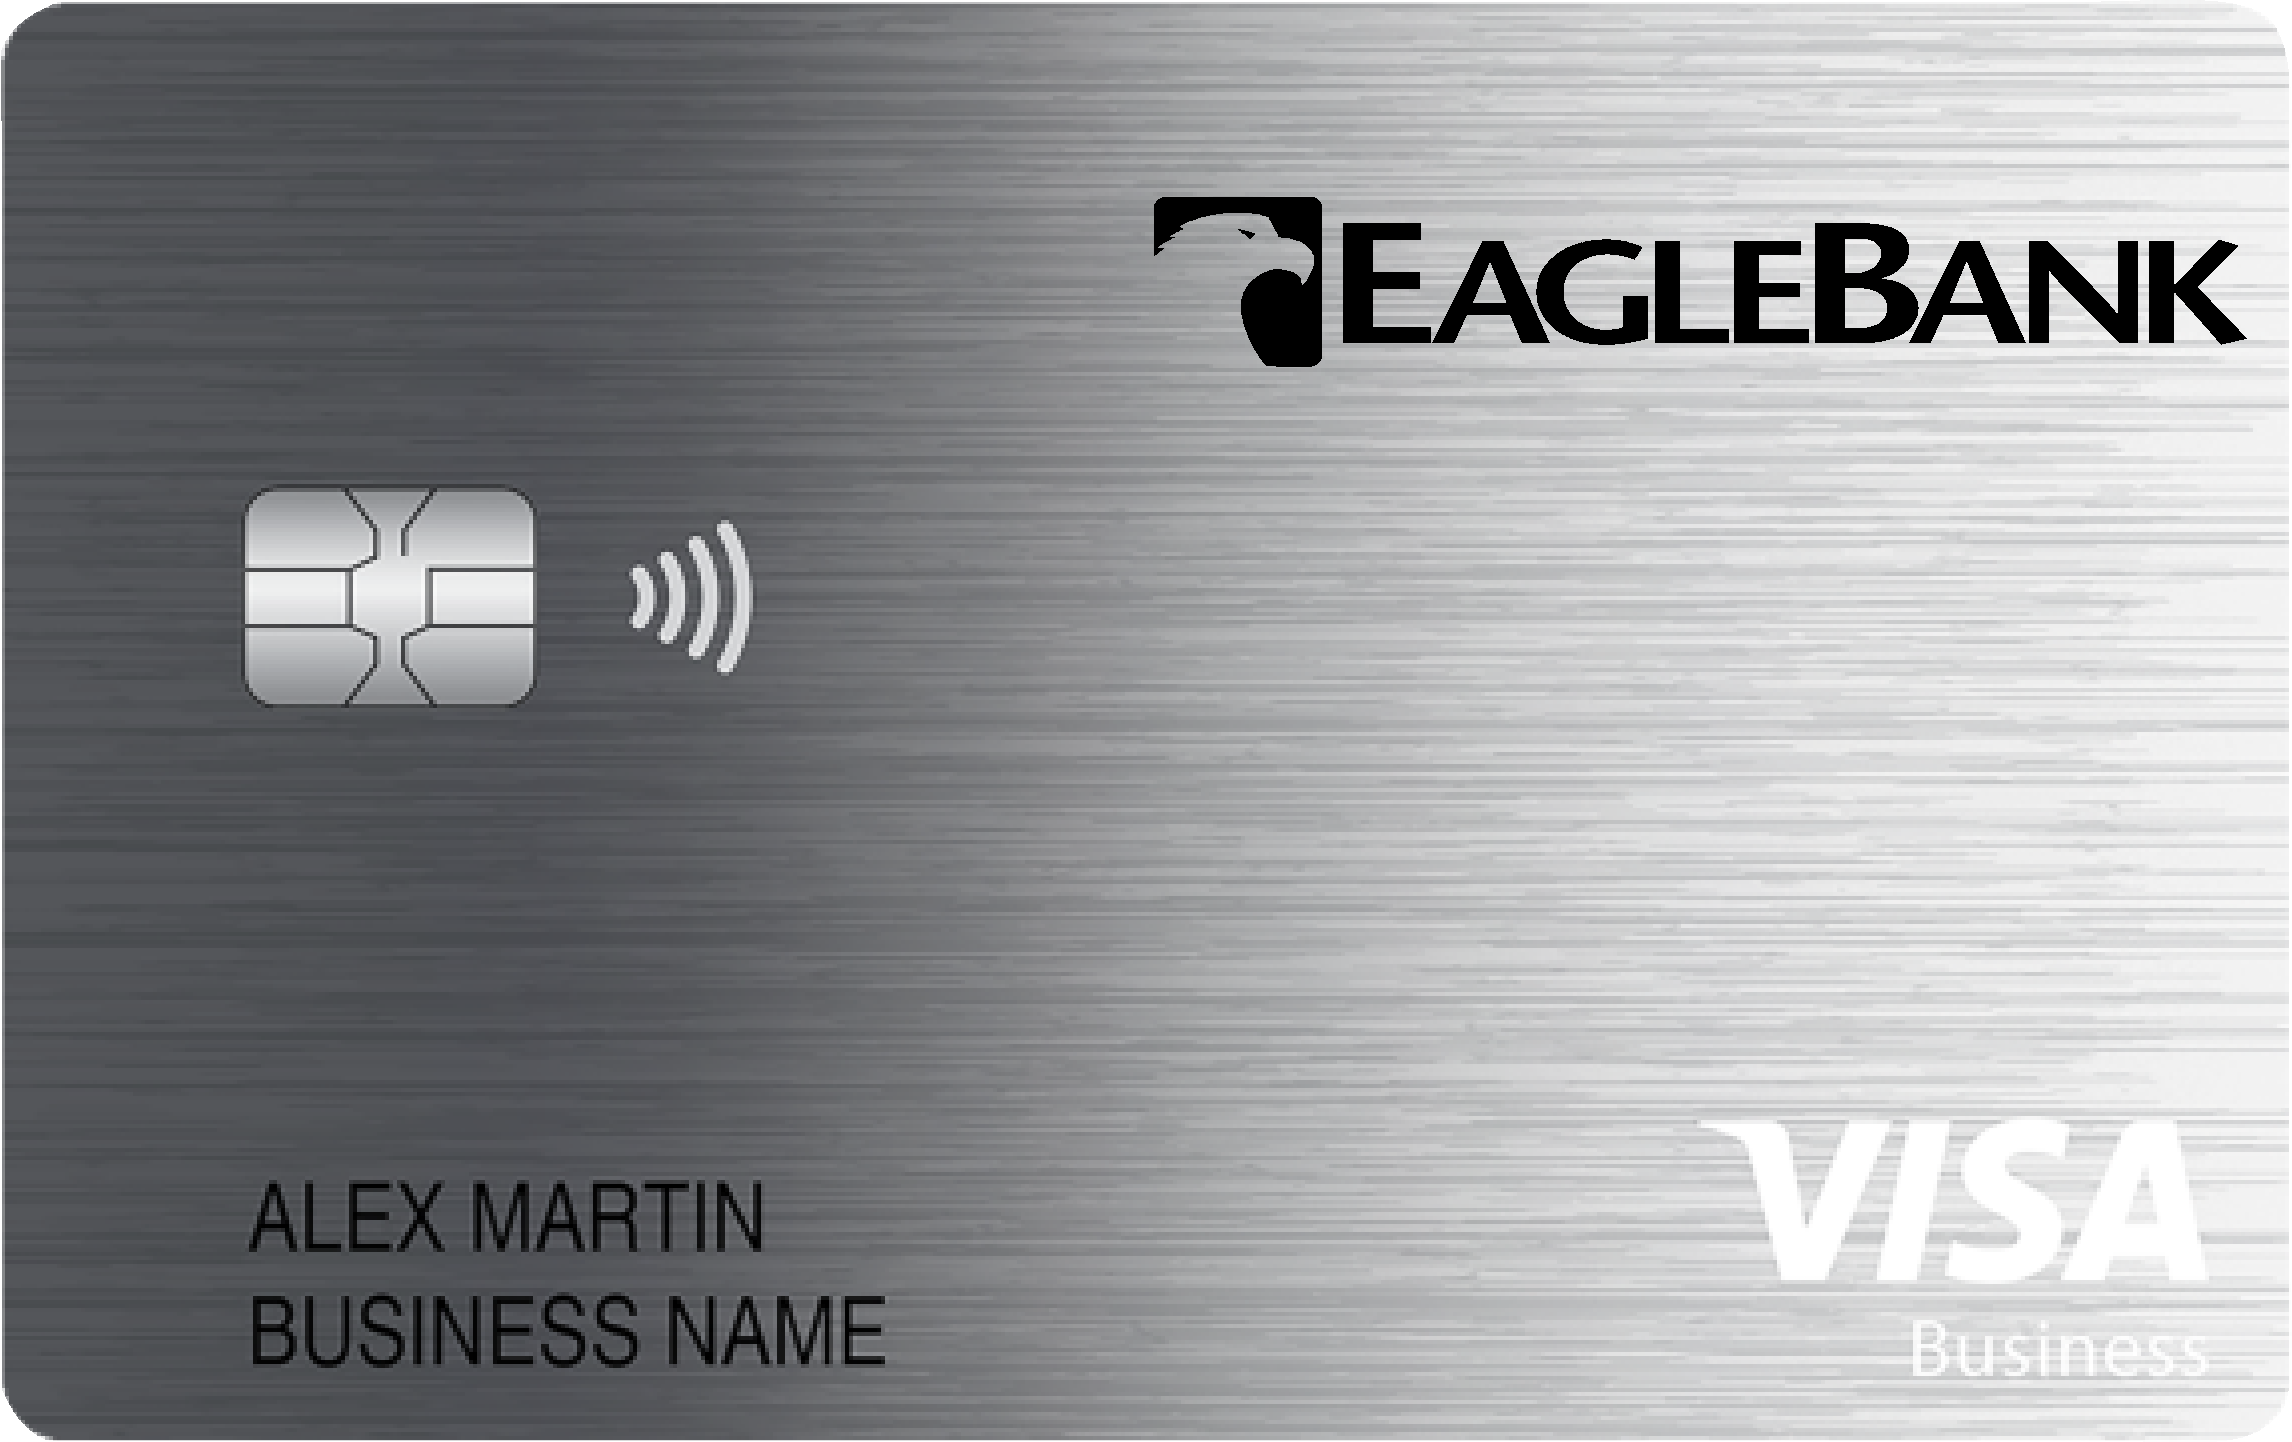 EagleBank Business Cash Preferred Card